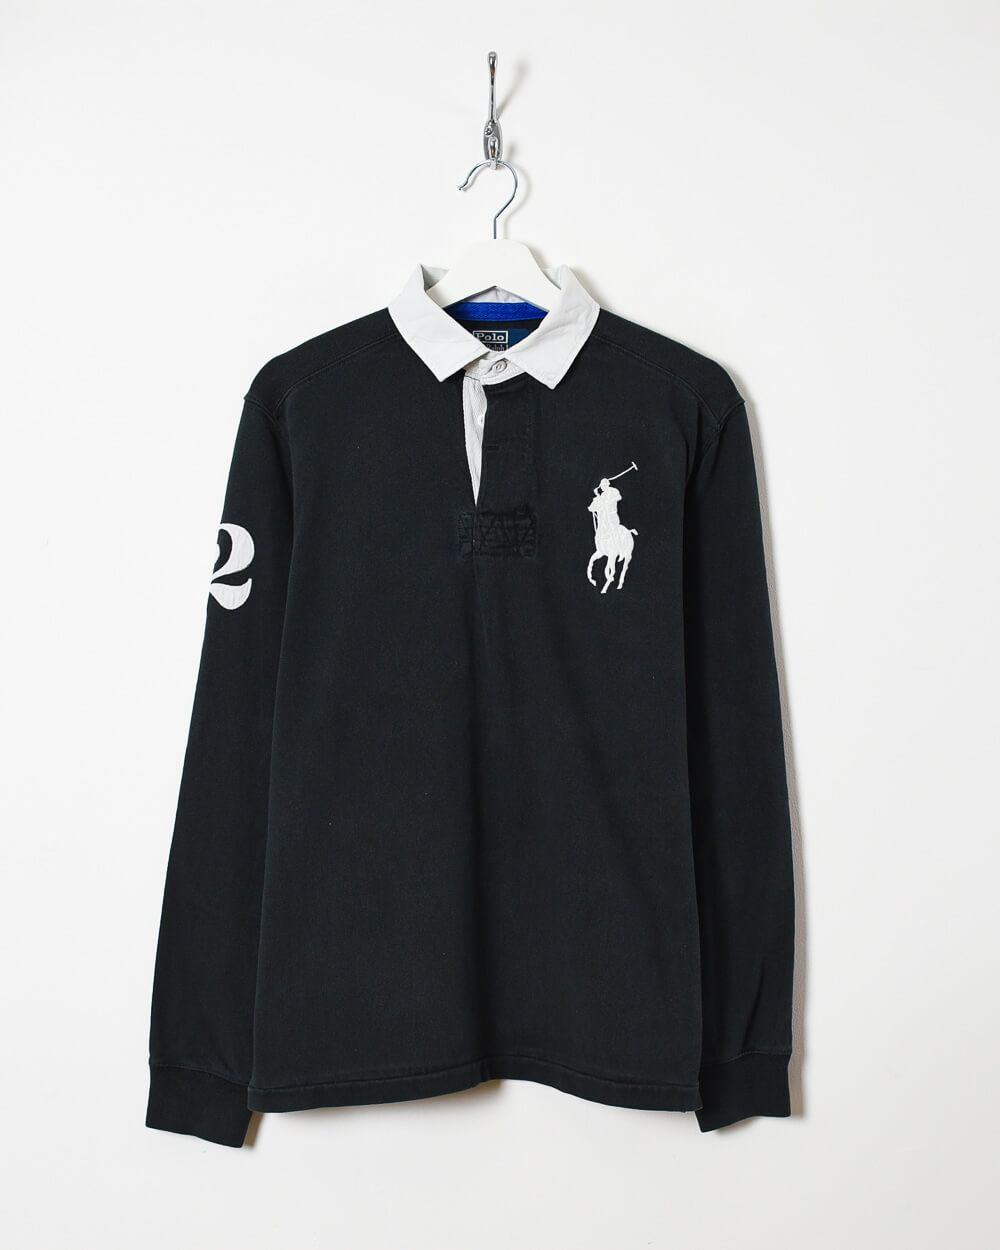 Black Ralph Lauren Rugby Shirt -  Medium